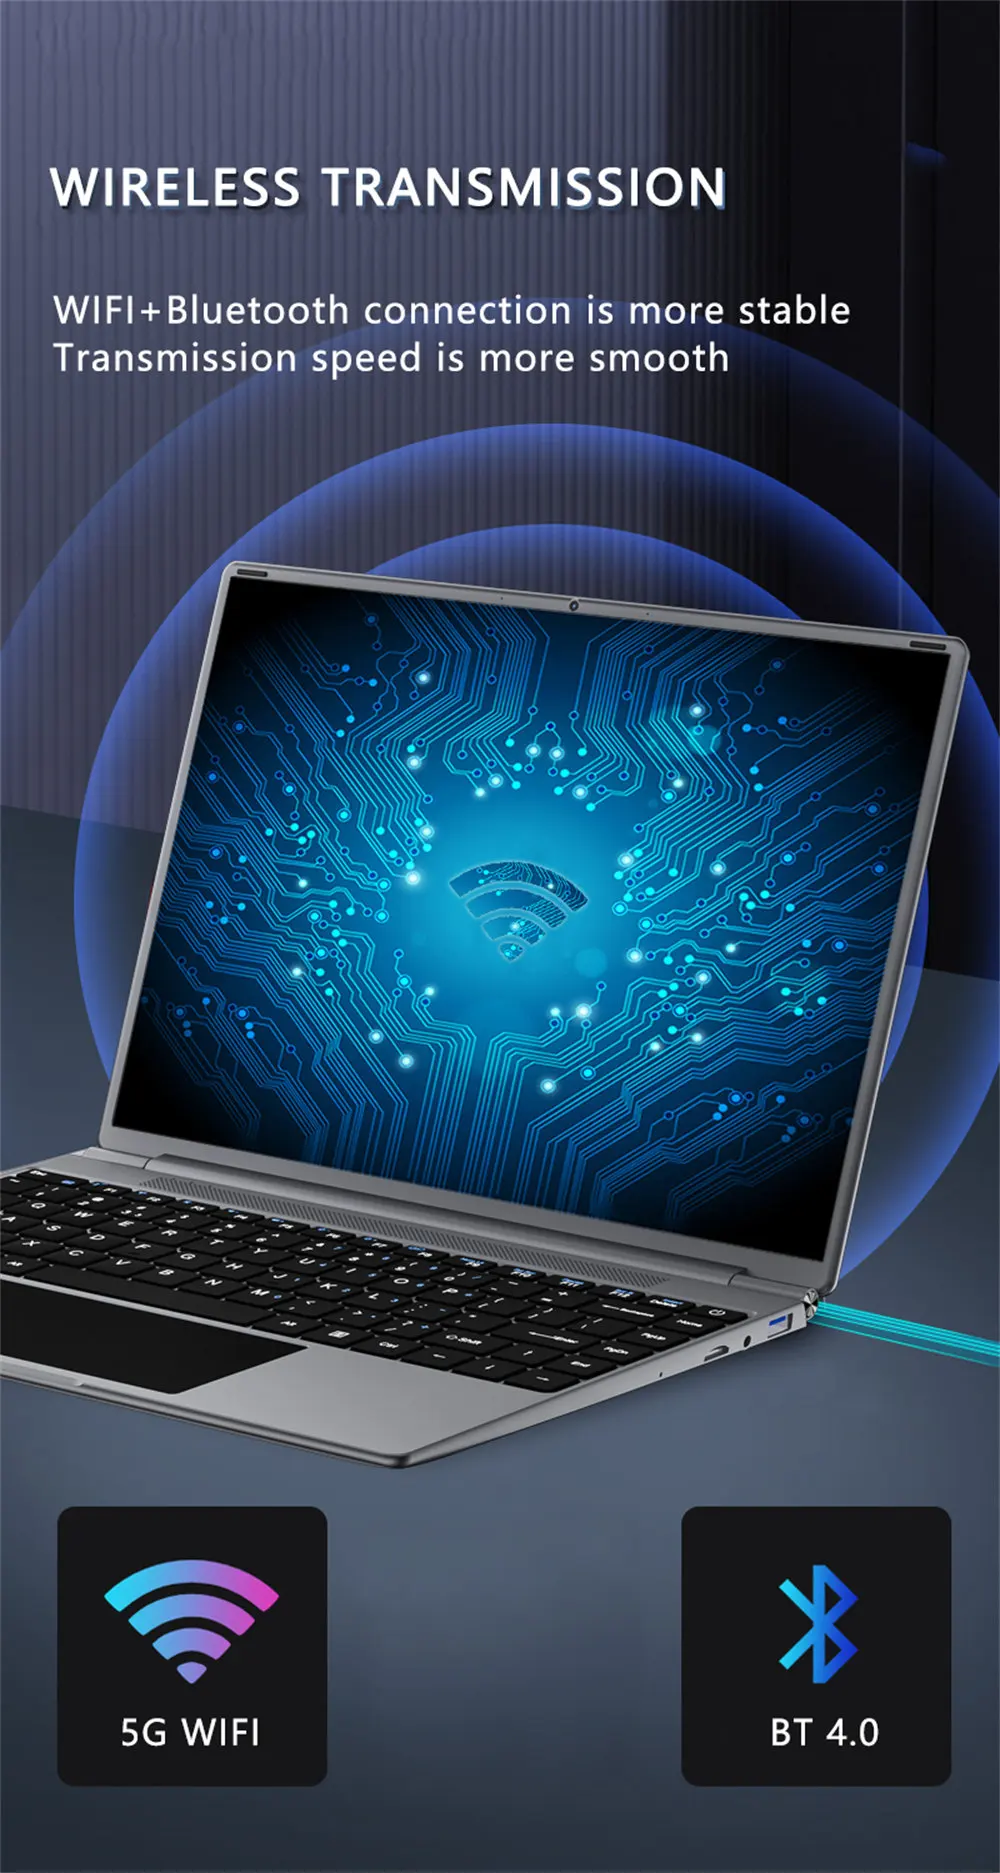 ultraslim laptops KUU YoBook M Laptop 13.5 inch 3K IPS Intel Celeron N4020 6G DDR4 RAM 128G SSD Win10 WiFi Type-C Notebook office study dell ultra slim laptop